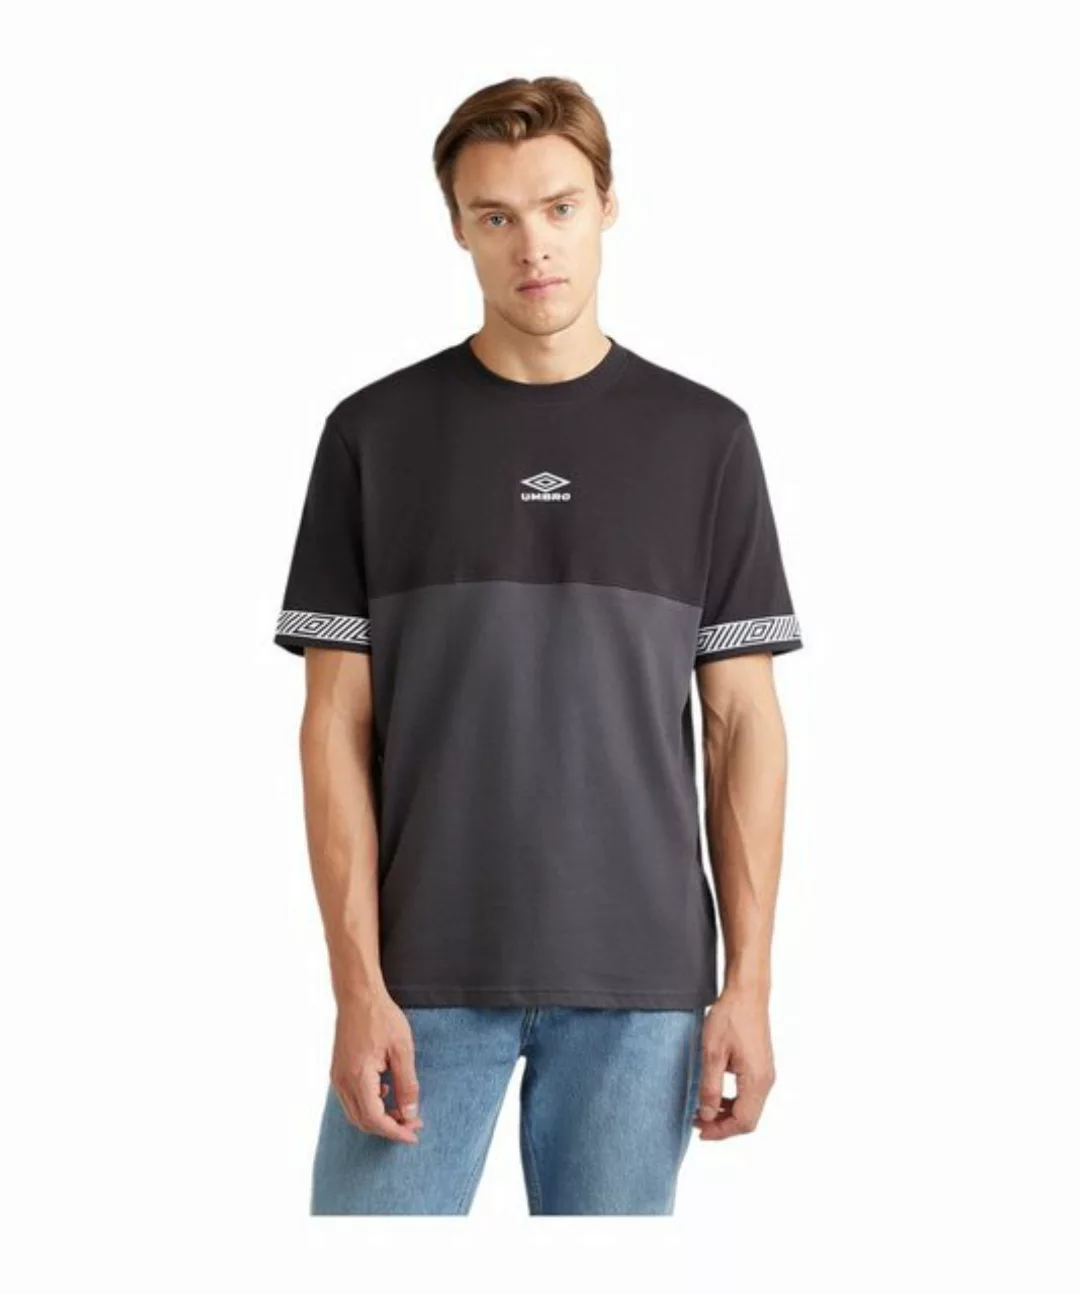 Umbro T-Shirt Sports Style Club Crew T-Shirt default günstig online kaufen